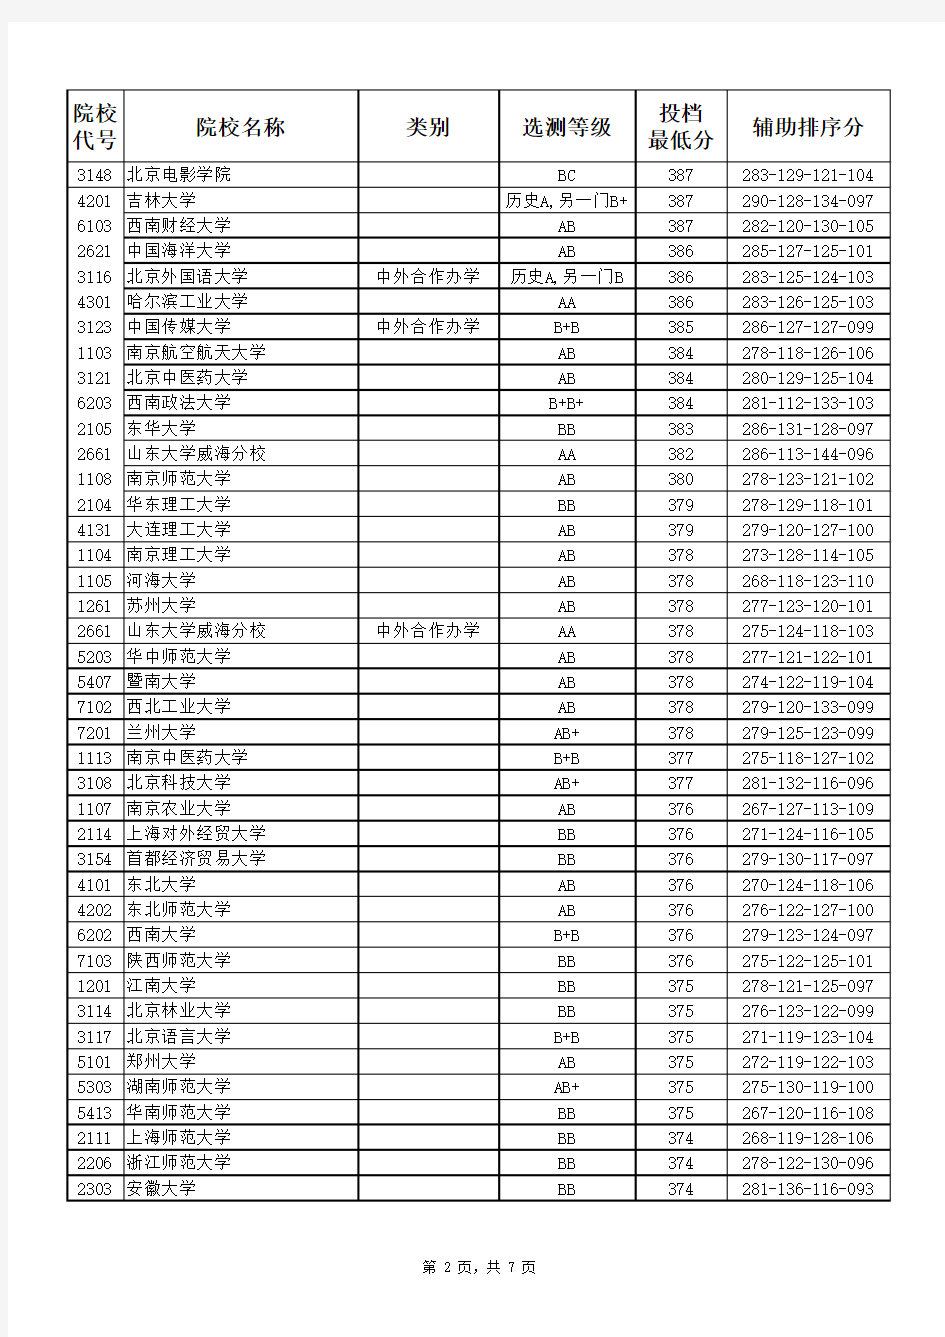 2020年江苏高考投档线